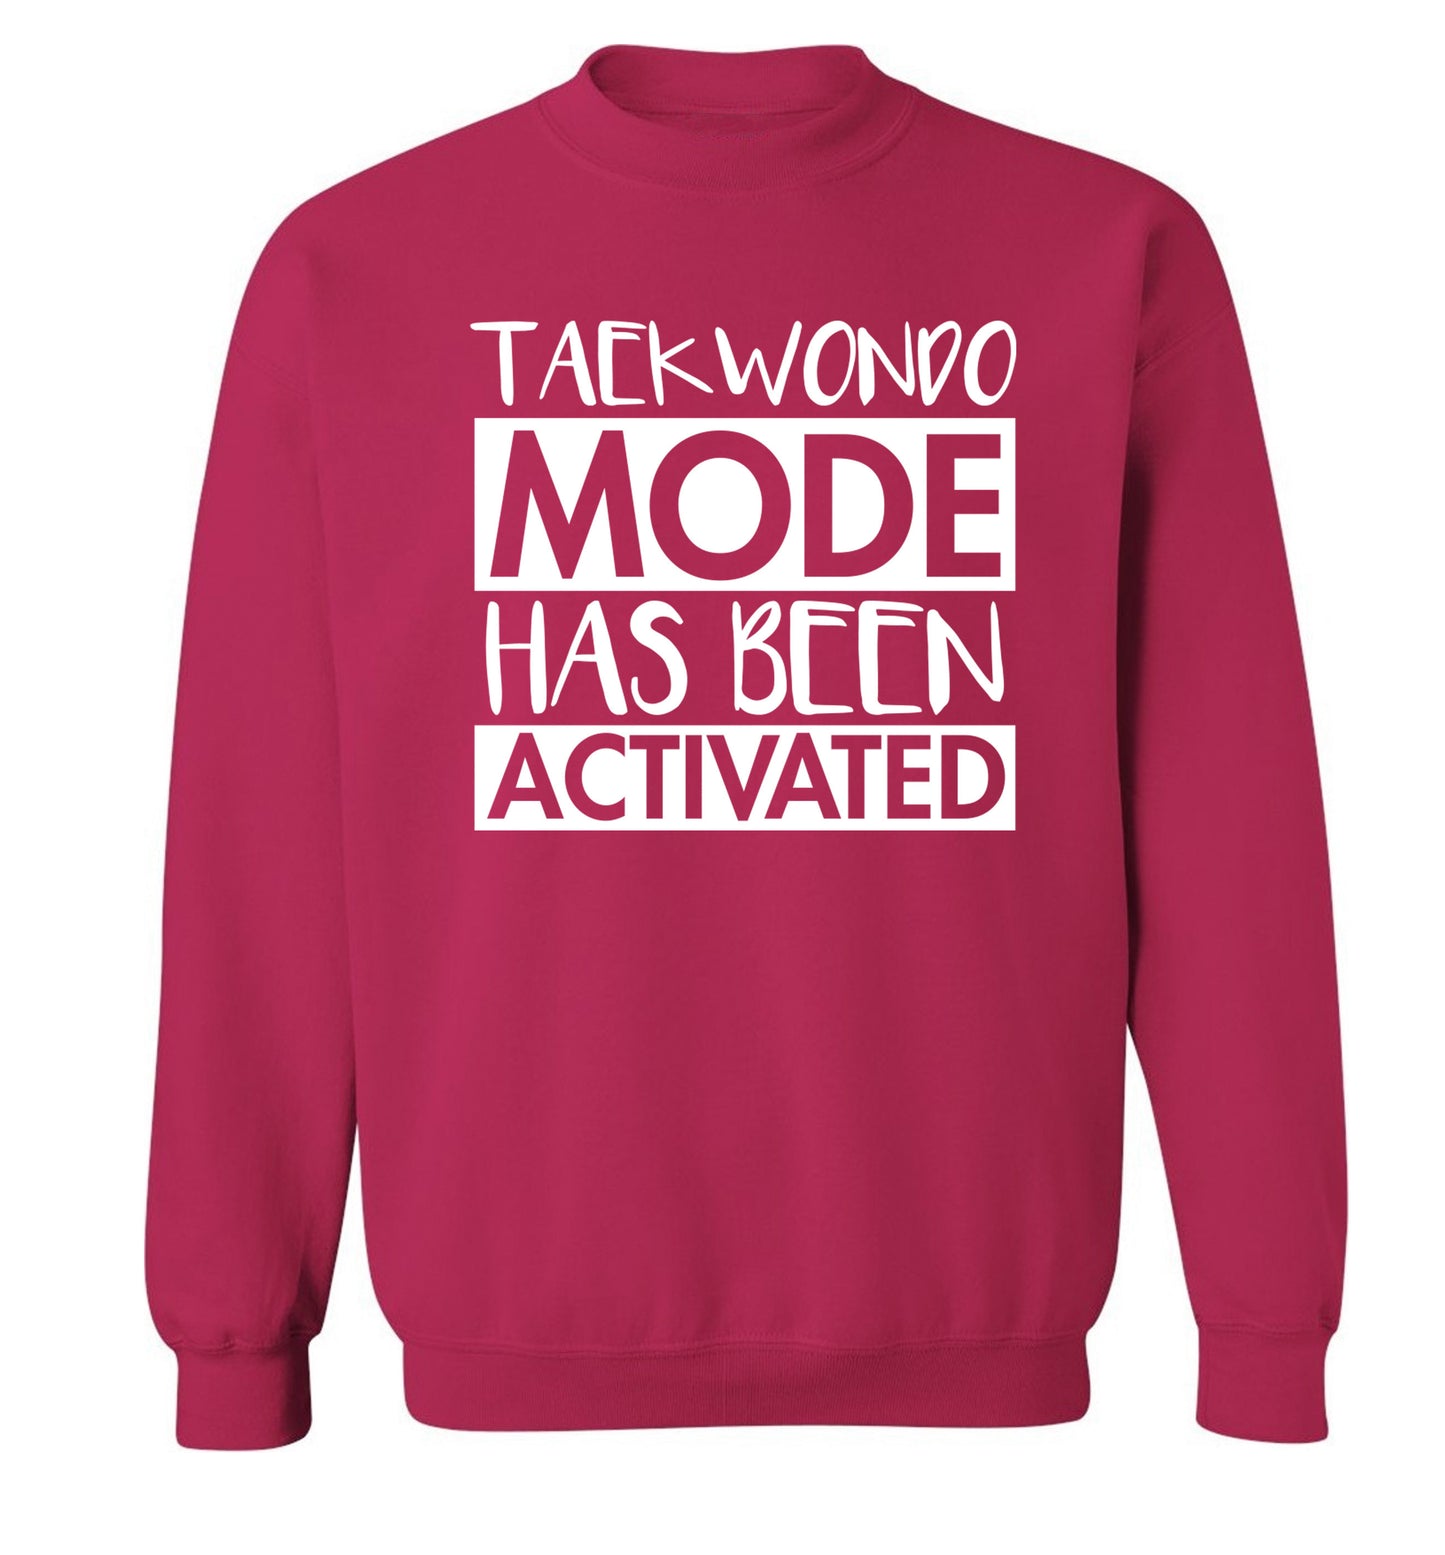 Taekwondo mode activated Adult's unisex pink Sweater 2XL